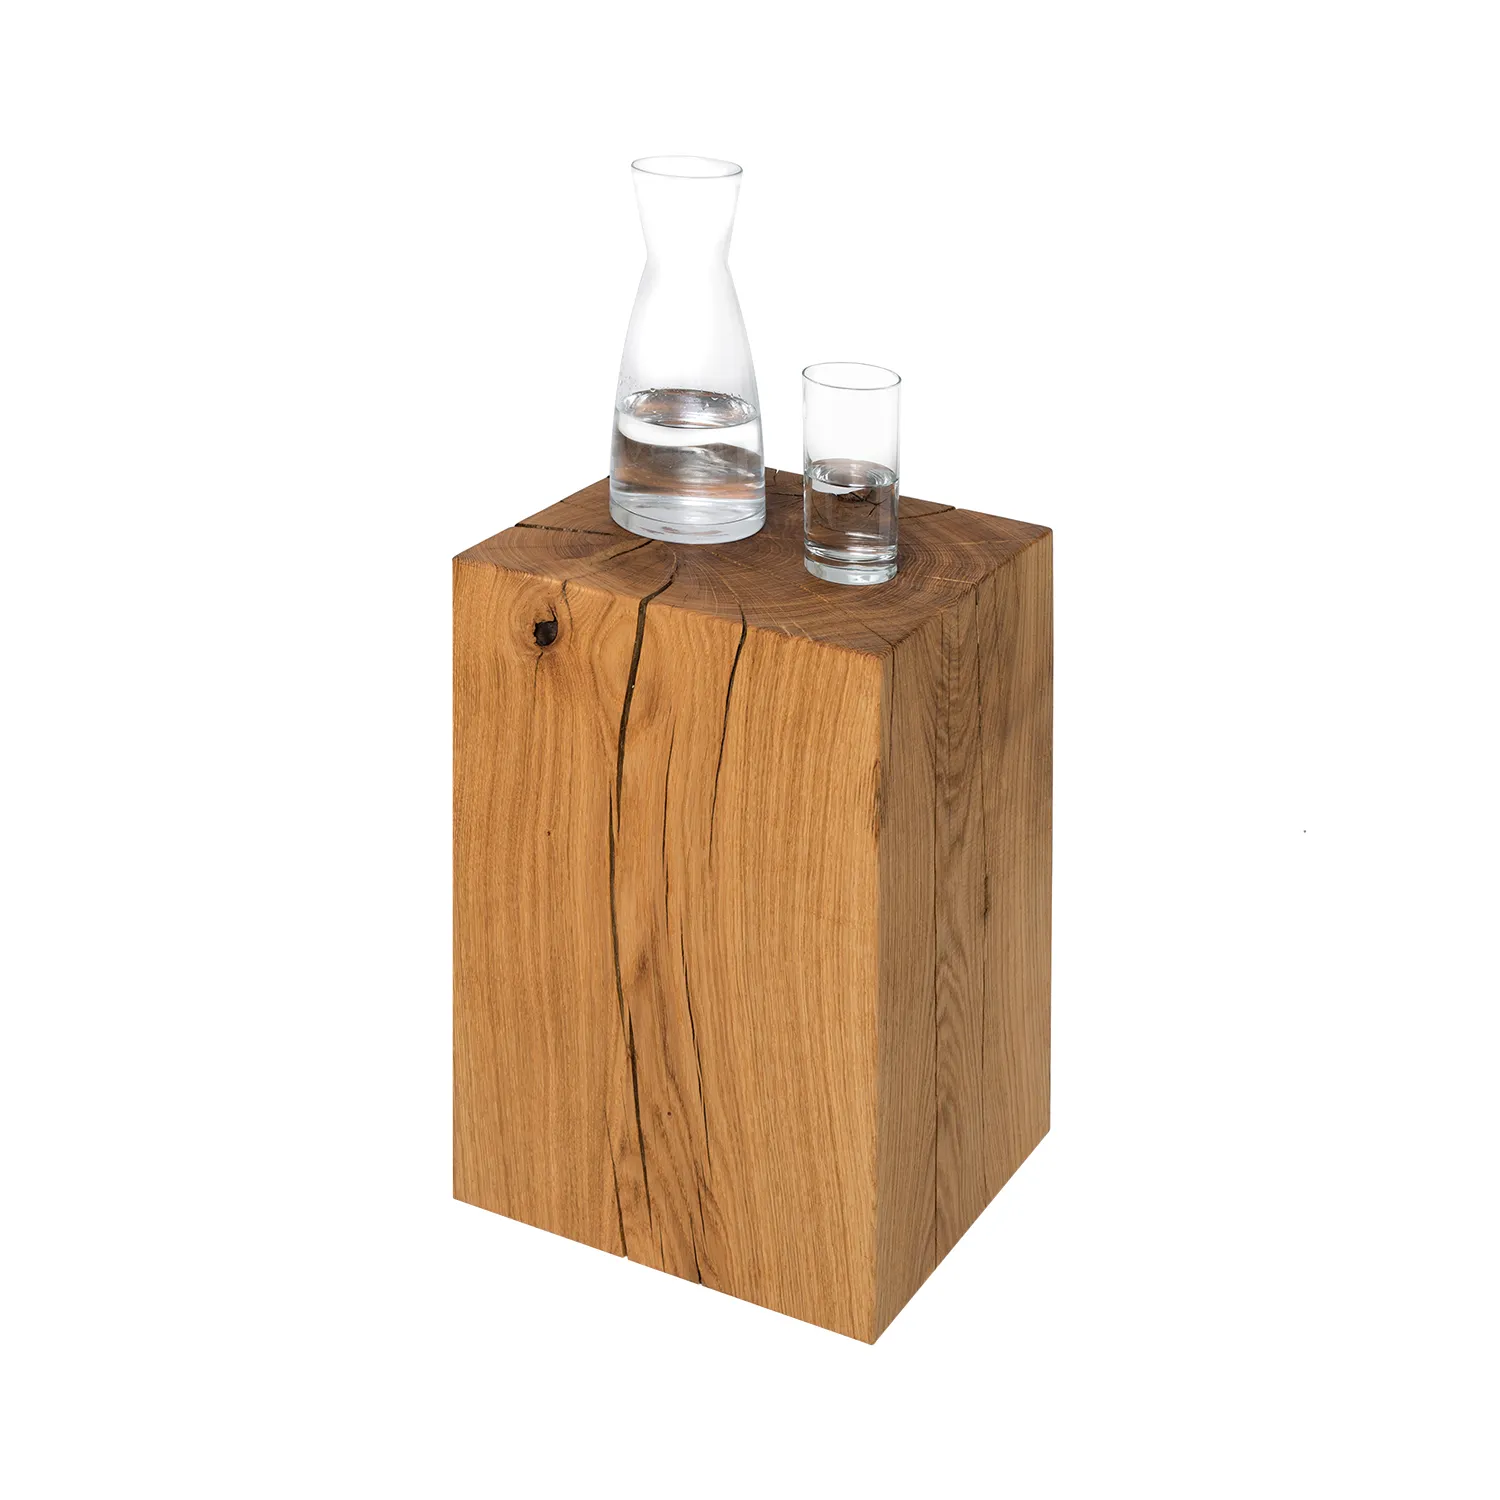 Holzblock Beistelltisch im 30 cm Format aus Eiche mit Wasserkaraffe und Glas